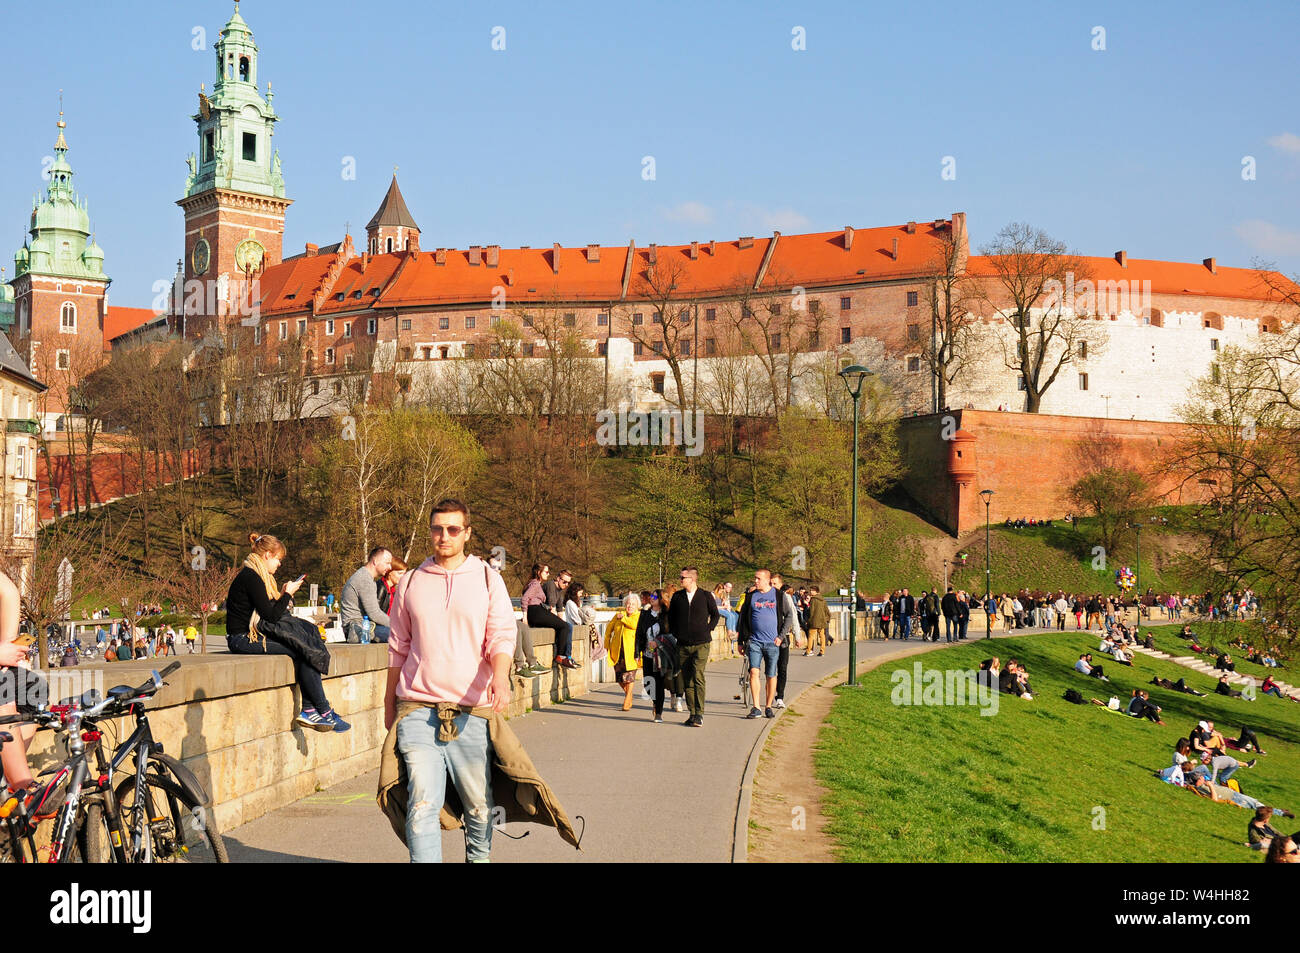 El domingo por la tarde libre. A comienzos de la primavera. Por el Castillo Real de Wawel, y a orillas del río Vístula, Cracovia, Pequeña Polonia. Foto de stock